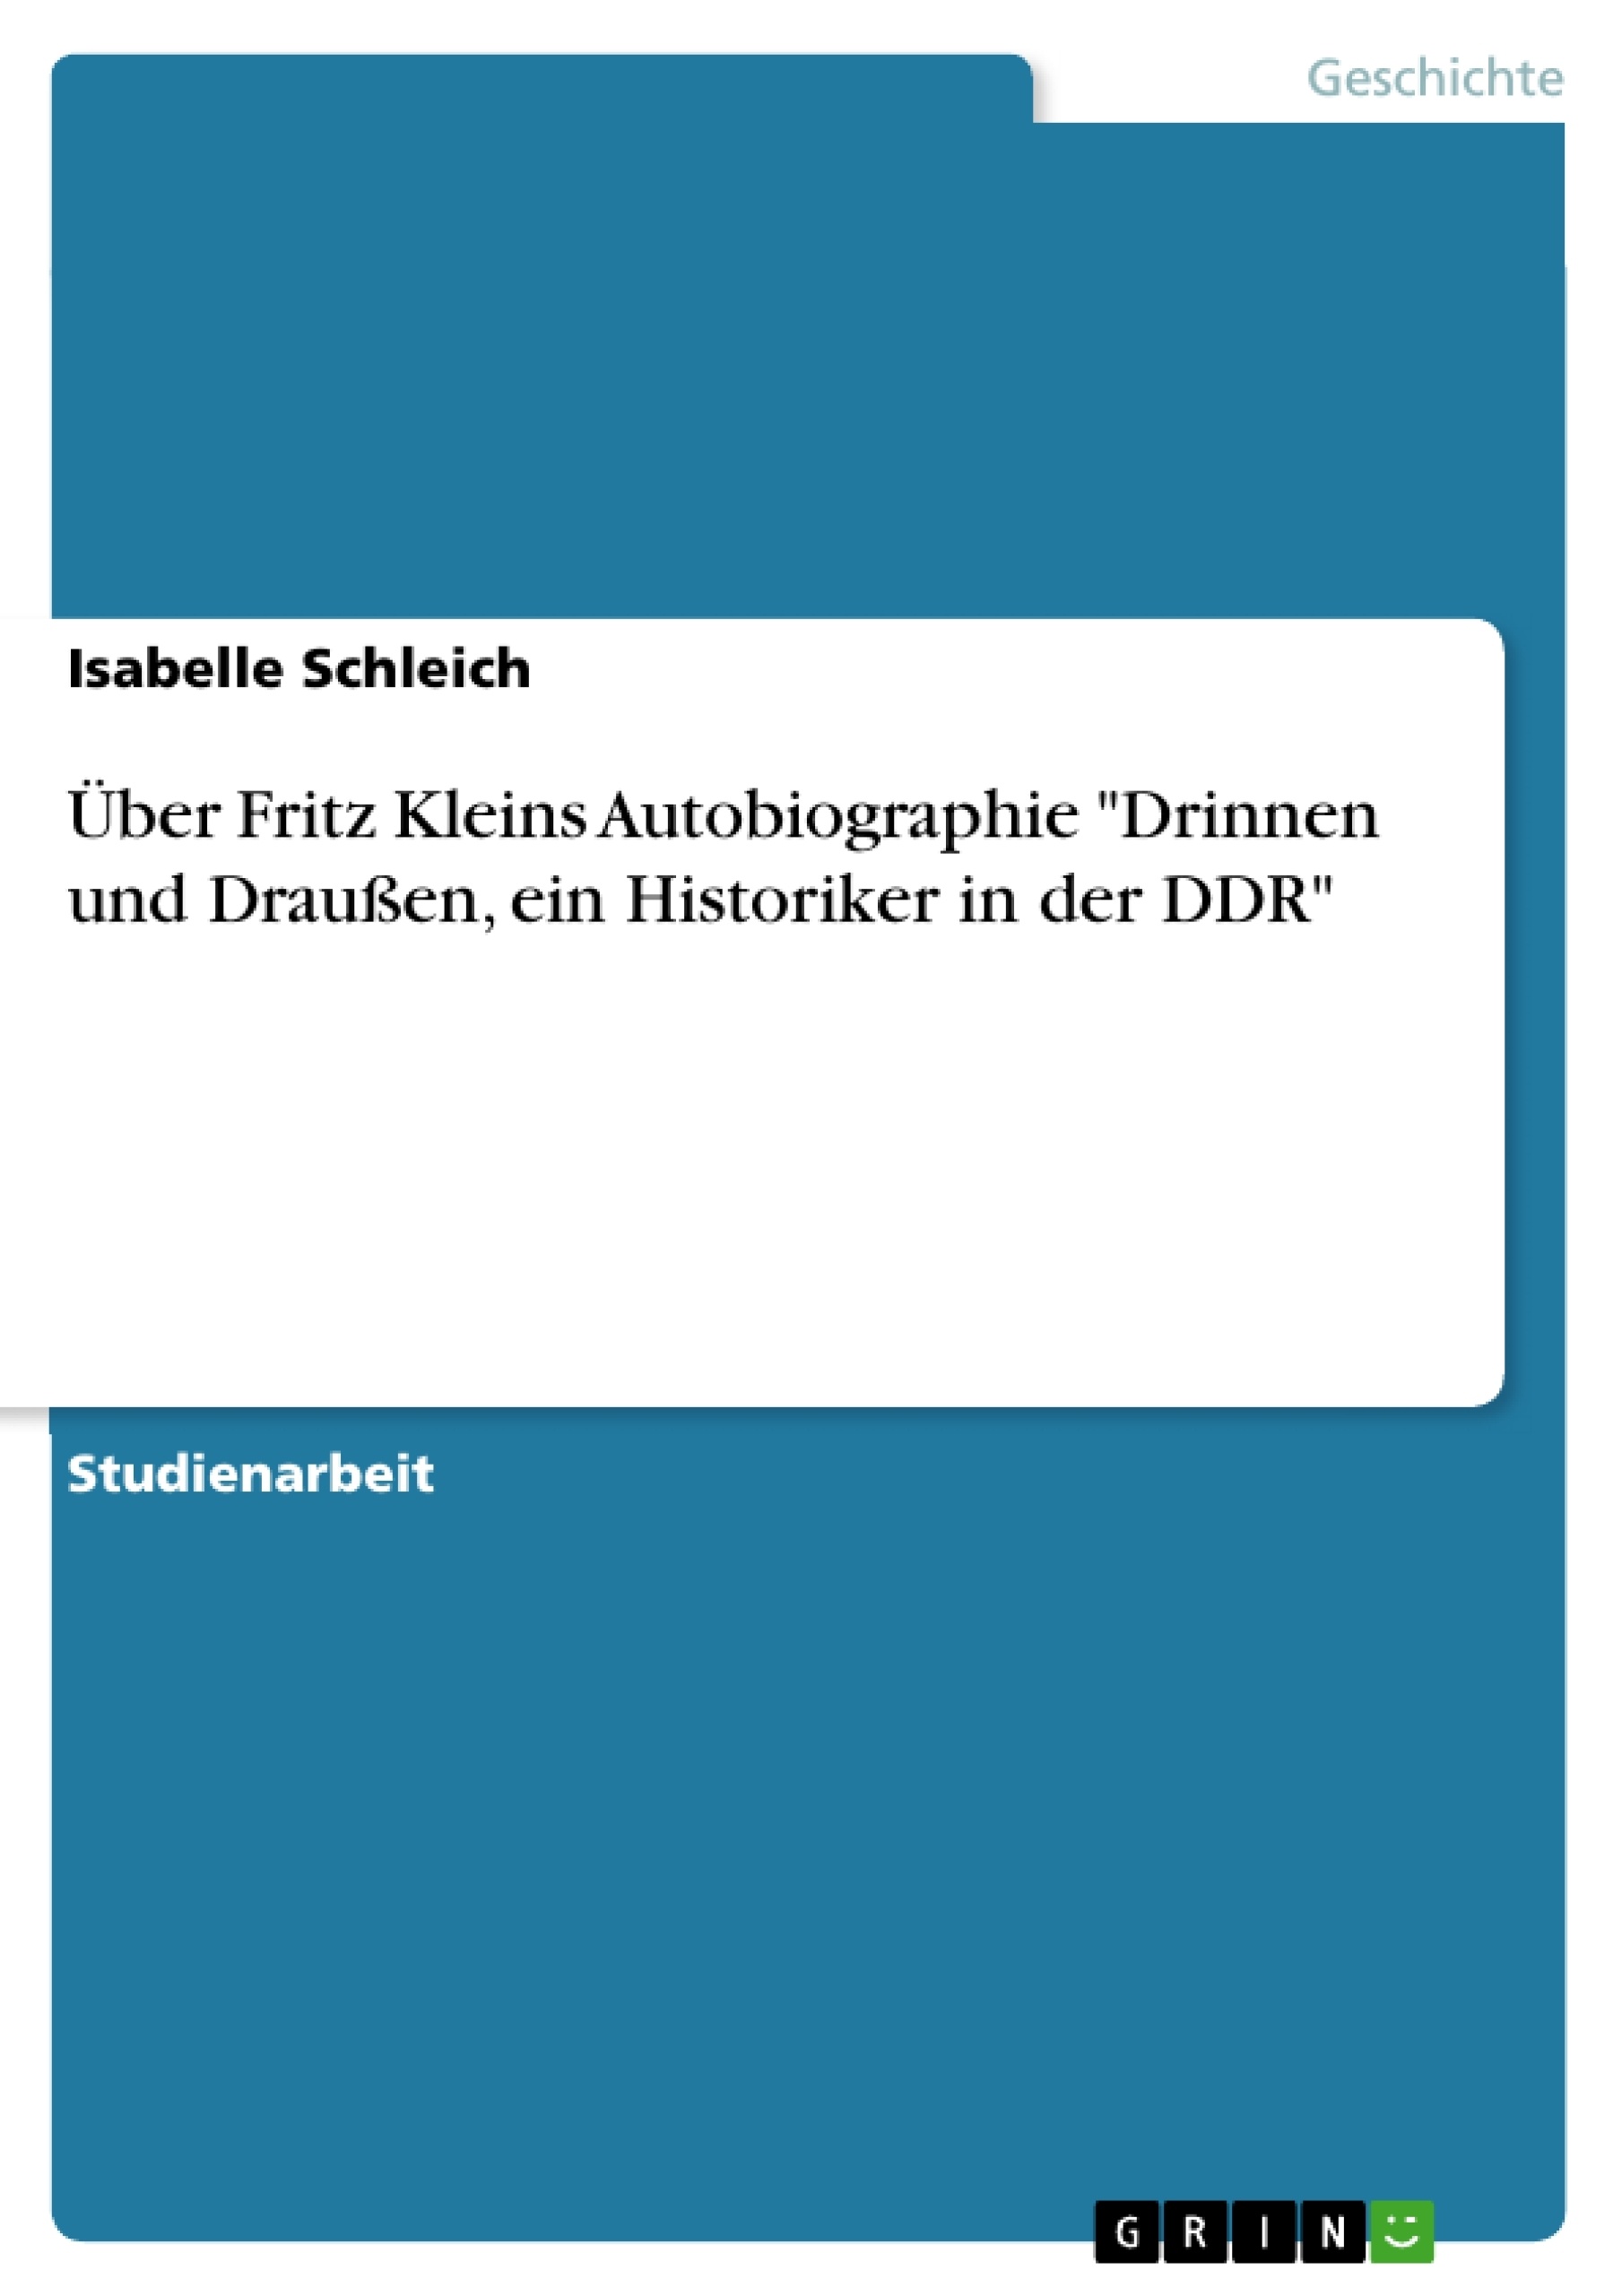 Titre: Über Fritz Kleins Autobiographie "Drinnen und Draußen, ein Historiker in der DDR"